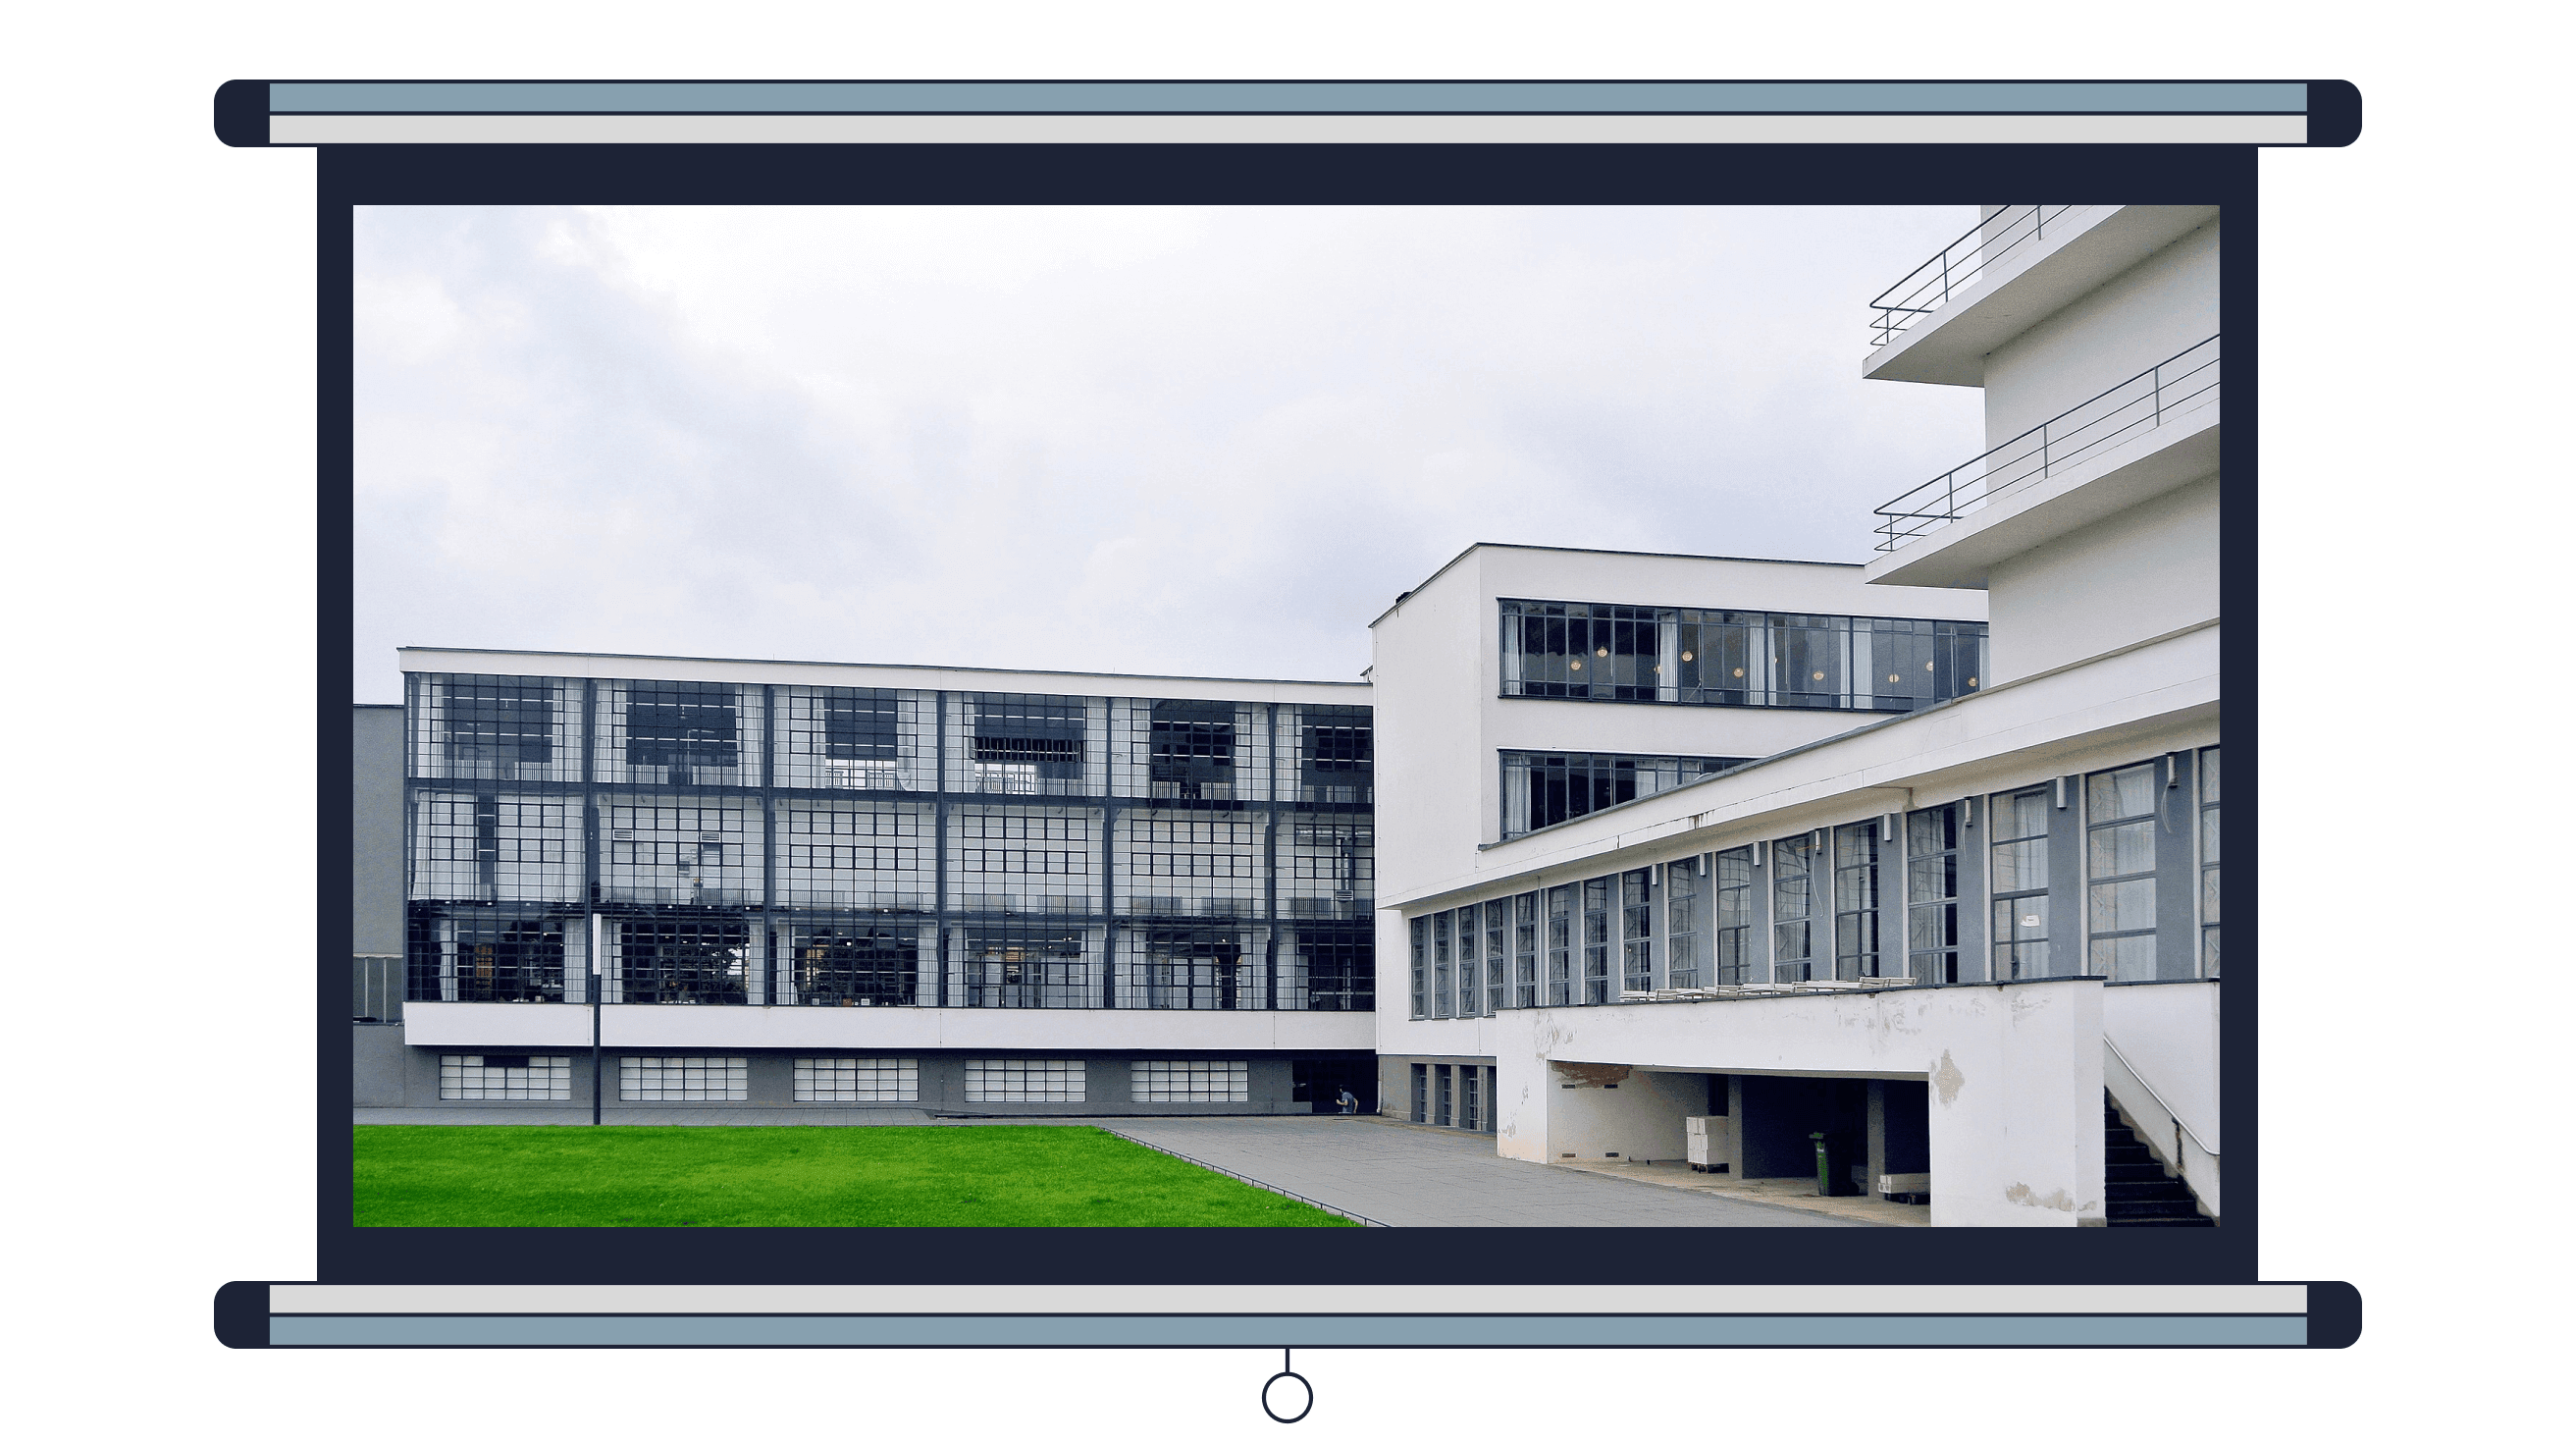 Пример 6. Здание школы «Баухаус», Дессау, Германия, архитектор Вальтер Гропиус<br><br>Фото: Spyrosdrakopoulos / Wikimedia Commons, CC BY-SA 4.0<br>